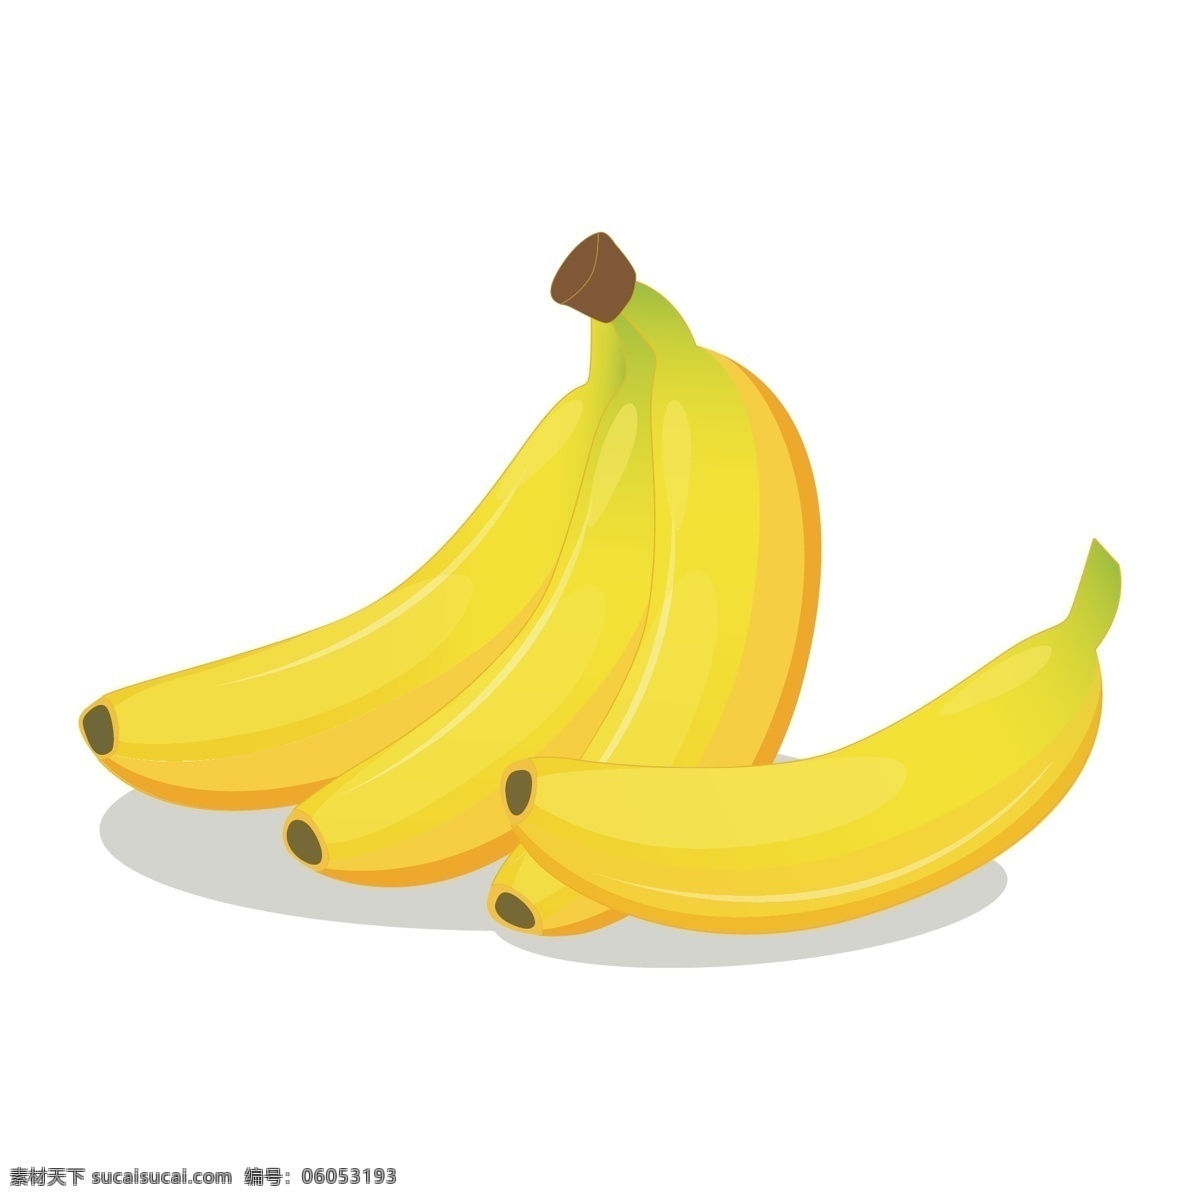 矢量卡通香蕉 香蕉 卡通香蕉 手绘香蕉 矢量手绘香蕉 香蕉素材 卡通水果 手绘水果 矢量水果 矢量卡通水果 矢量手绘水果 卡通水果素材